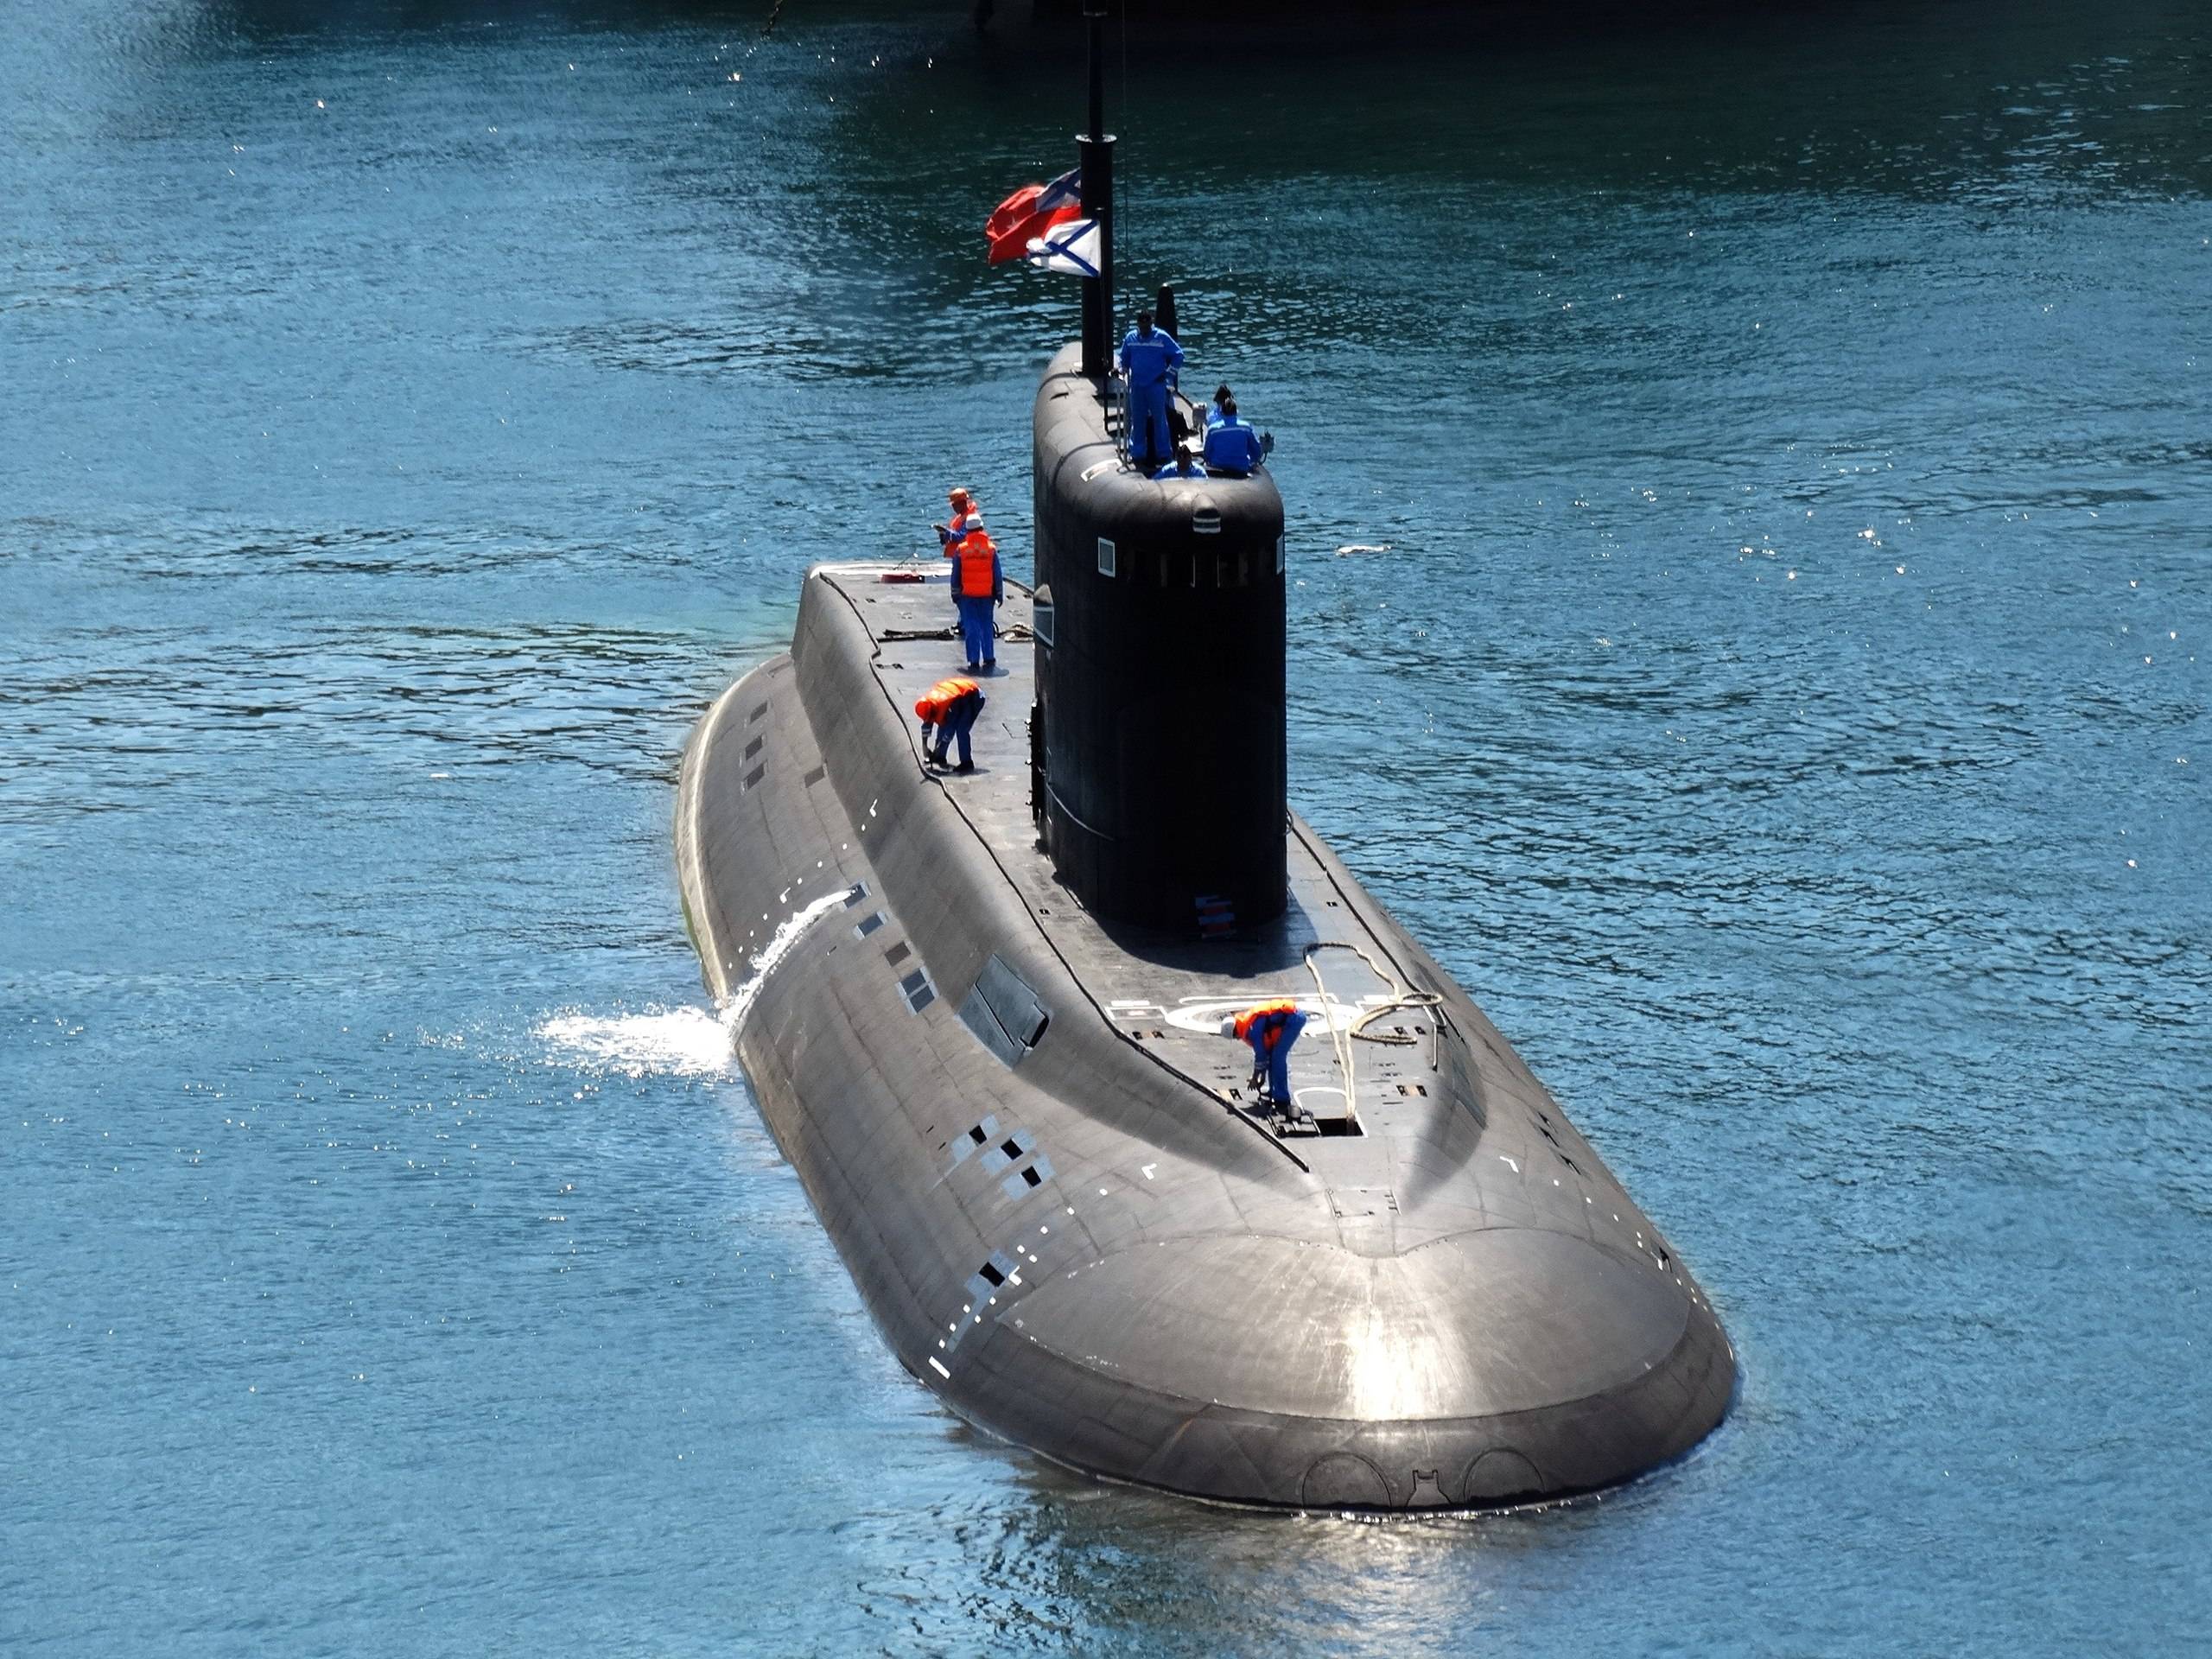 Варшавянка - подводные лодки проектов 636 и 877, история разработки и применение, конструкция и вооружение, характеристики, достоинства и недостатки, модификация 636.3